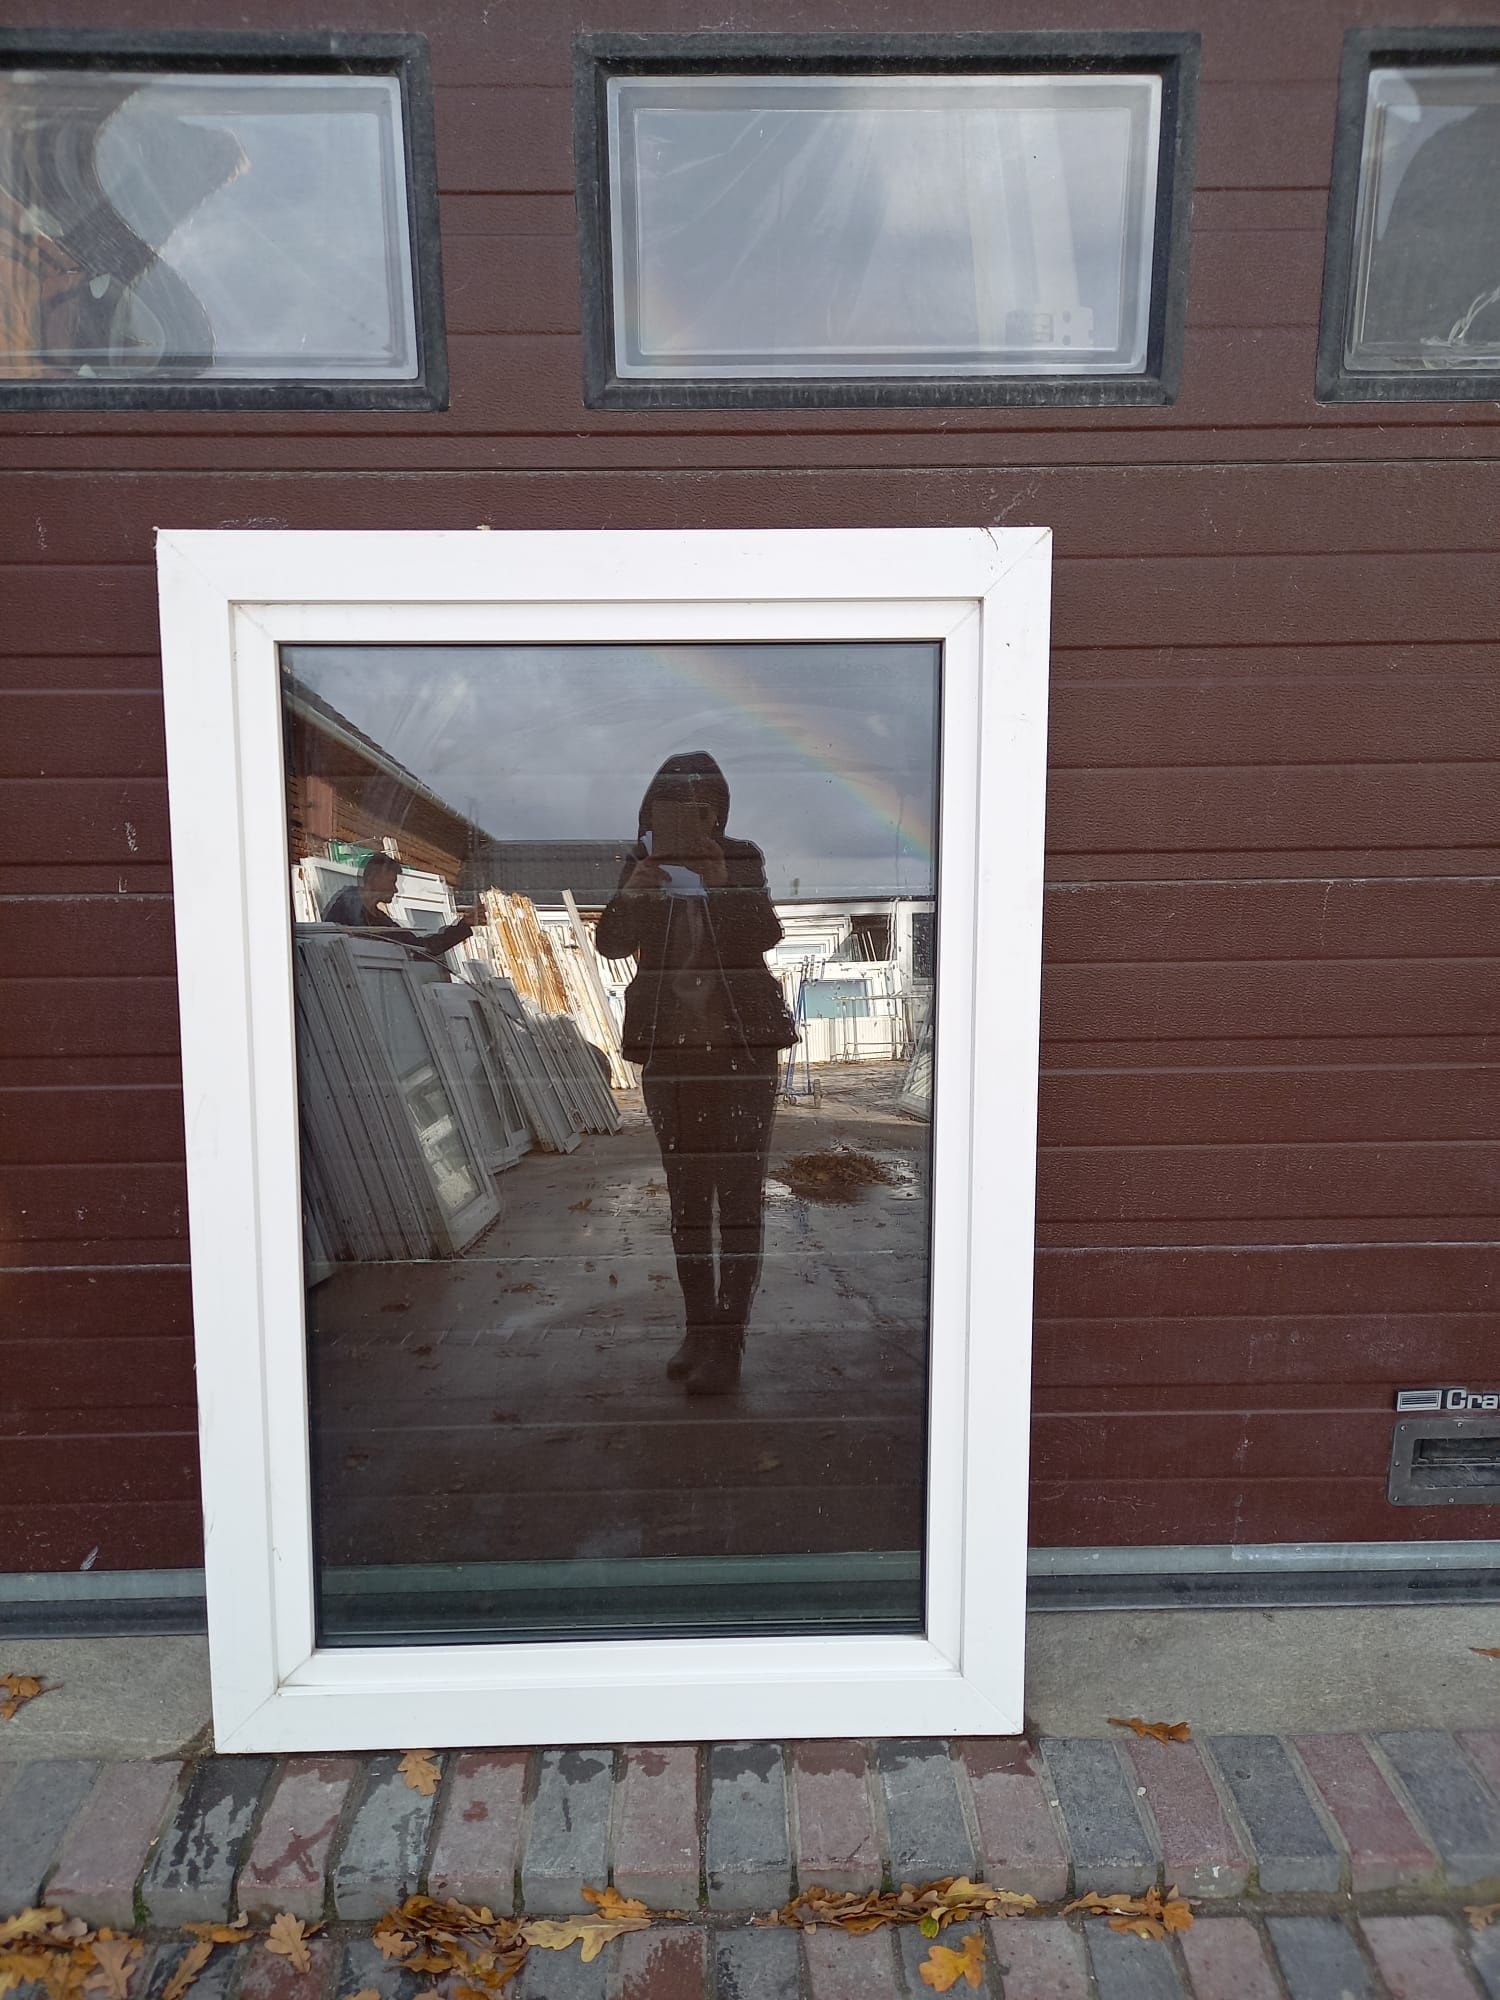 Okna pcv 102x150 plastikowe Niemieckie okno DOWÓZ CAŁY KRAJ